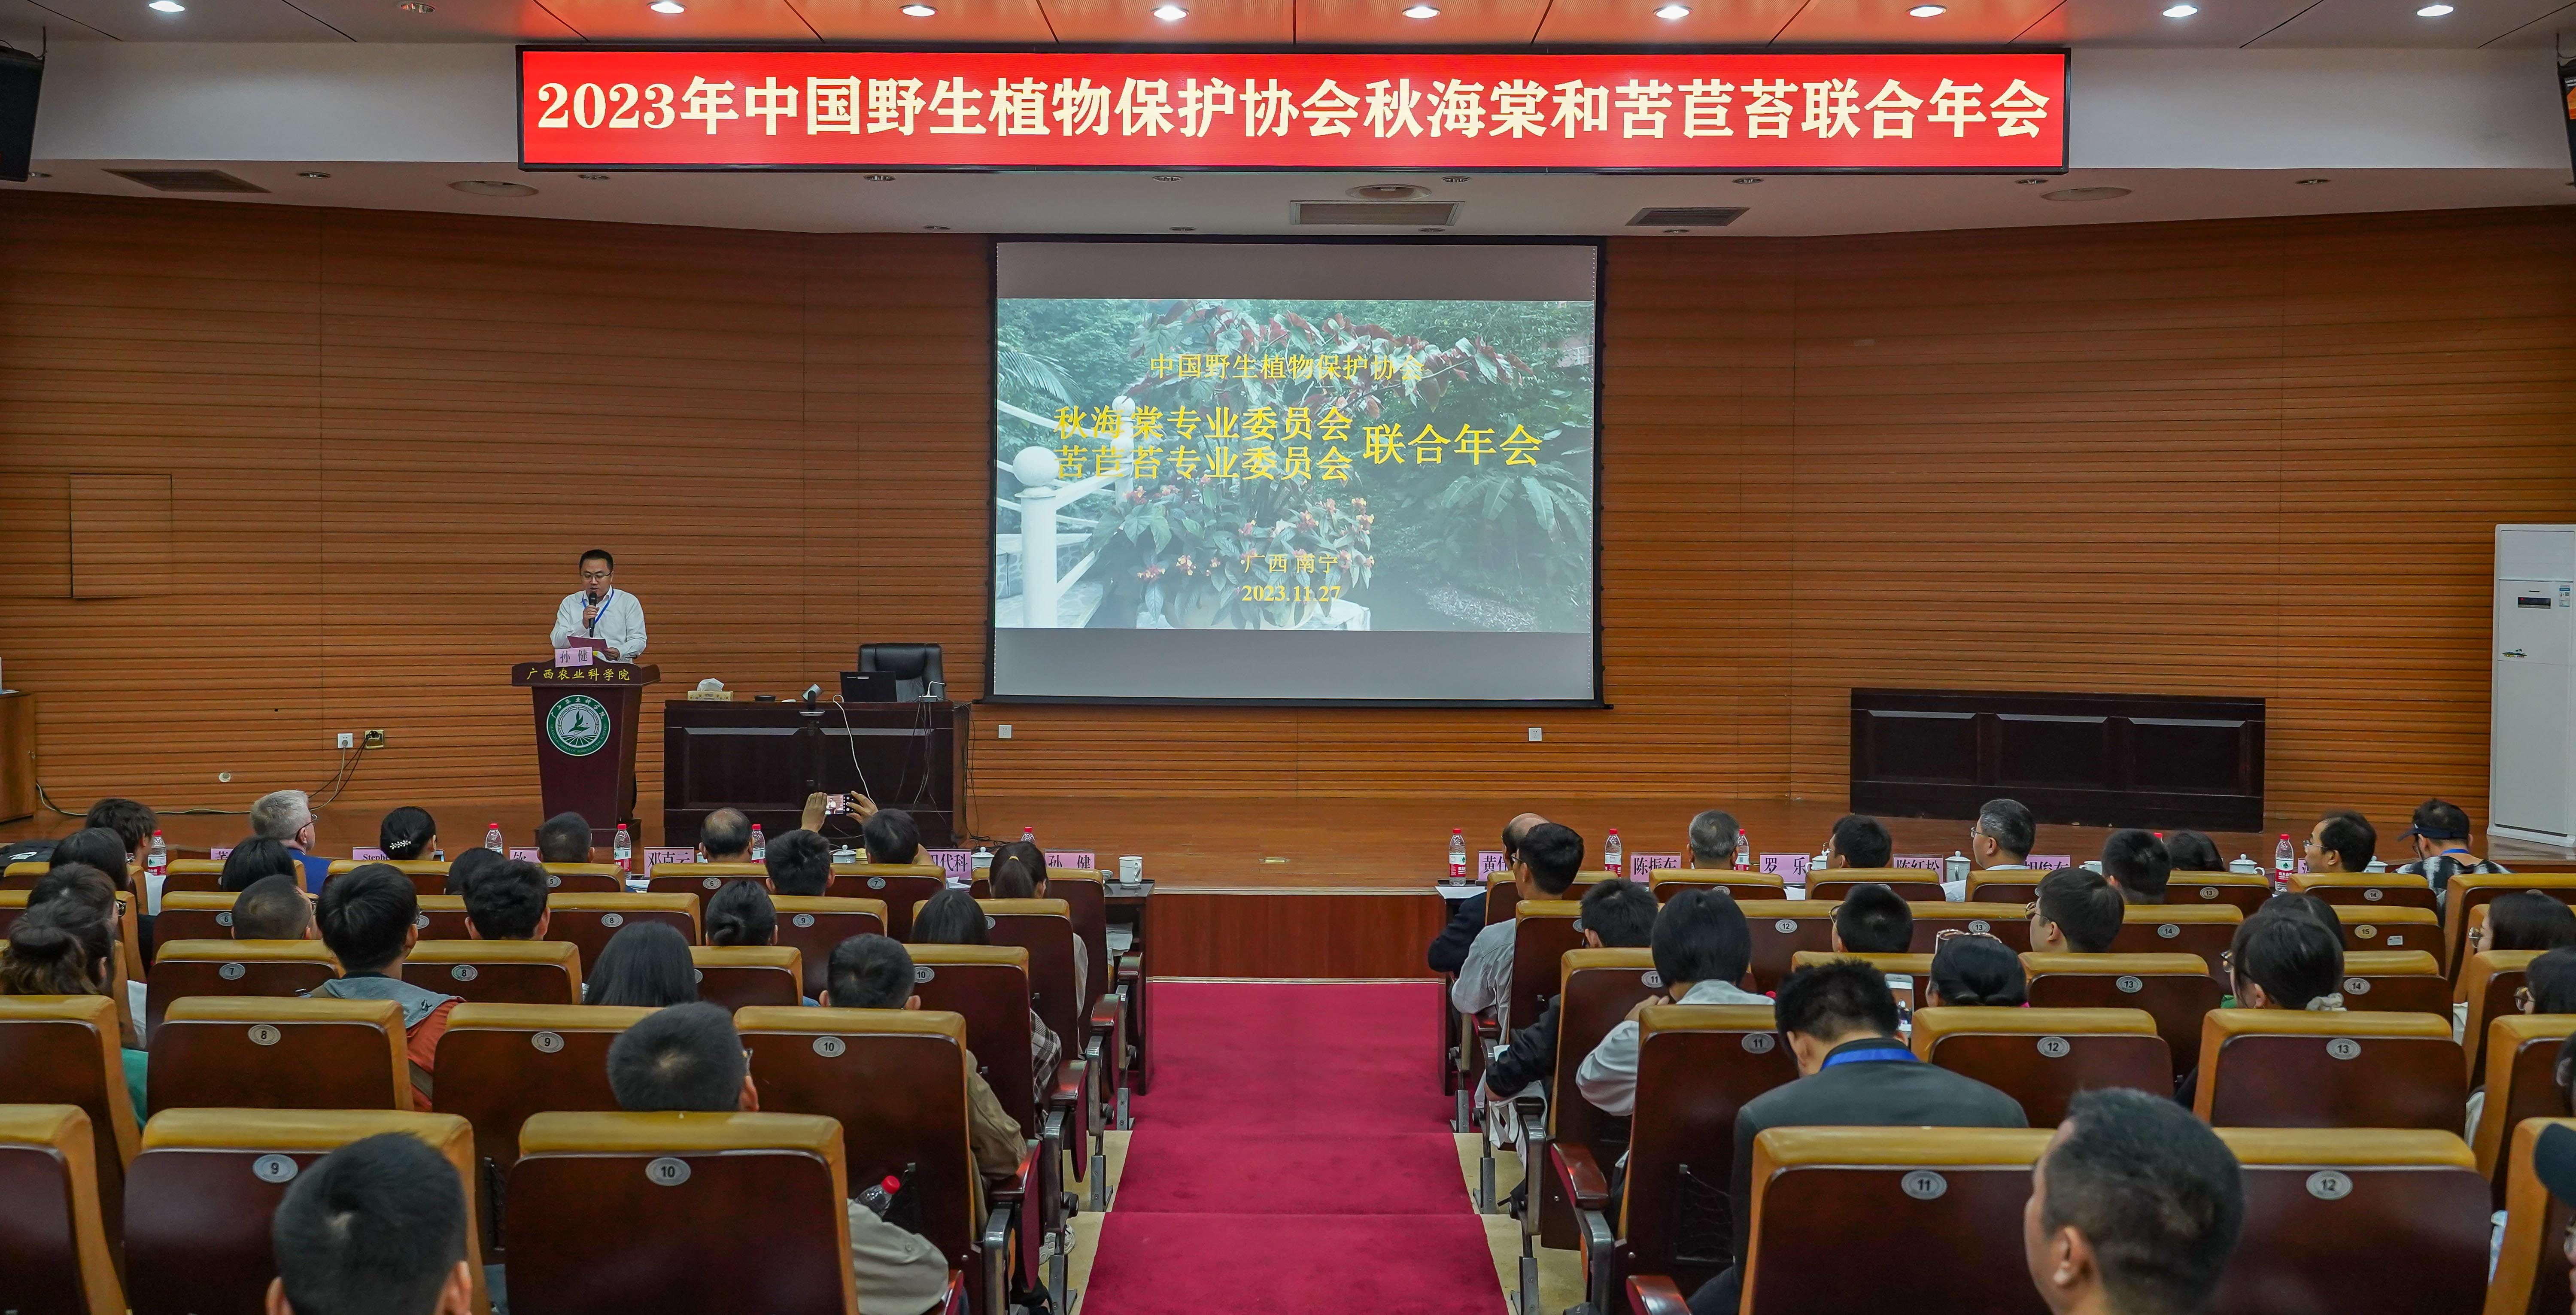 花卉所承办的中国野生植物保护协会秋海棠专业委员会和苦苣苔专业委员会联合年会成功召开